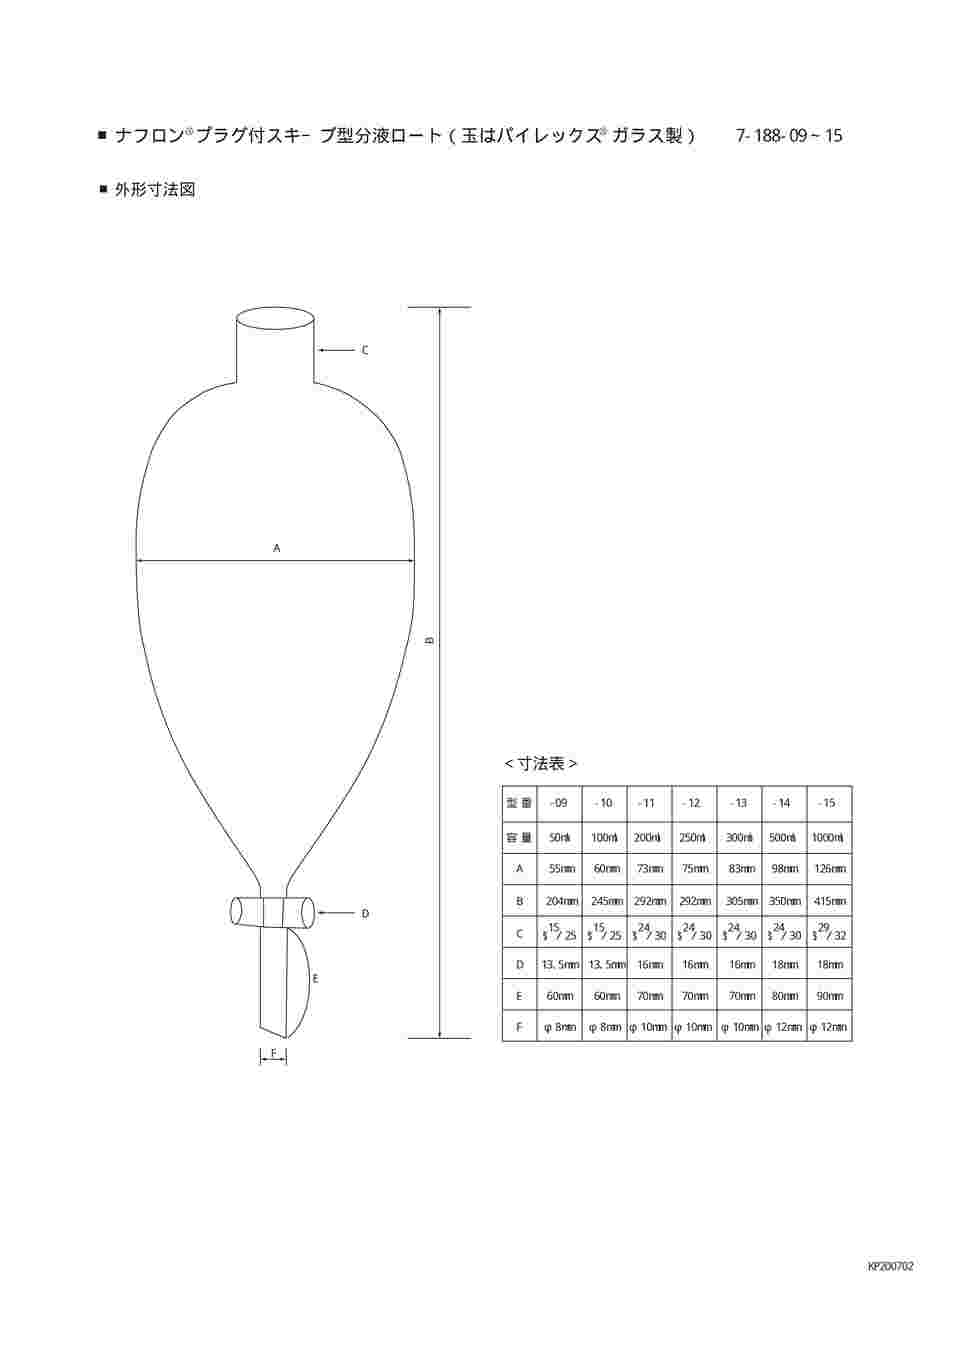 7-188-15 スキーブ型分液ロート テフロン（R）プラグ付 1000mL 【AXEL